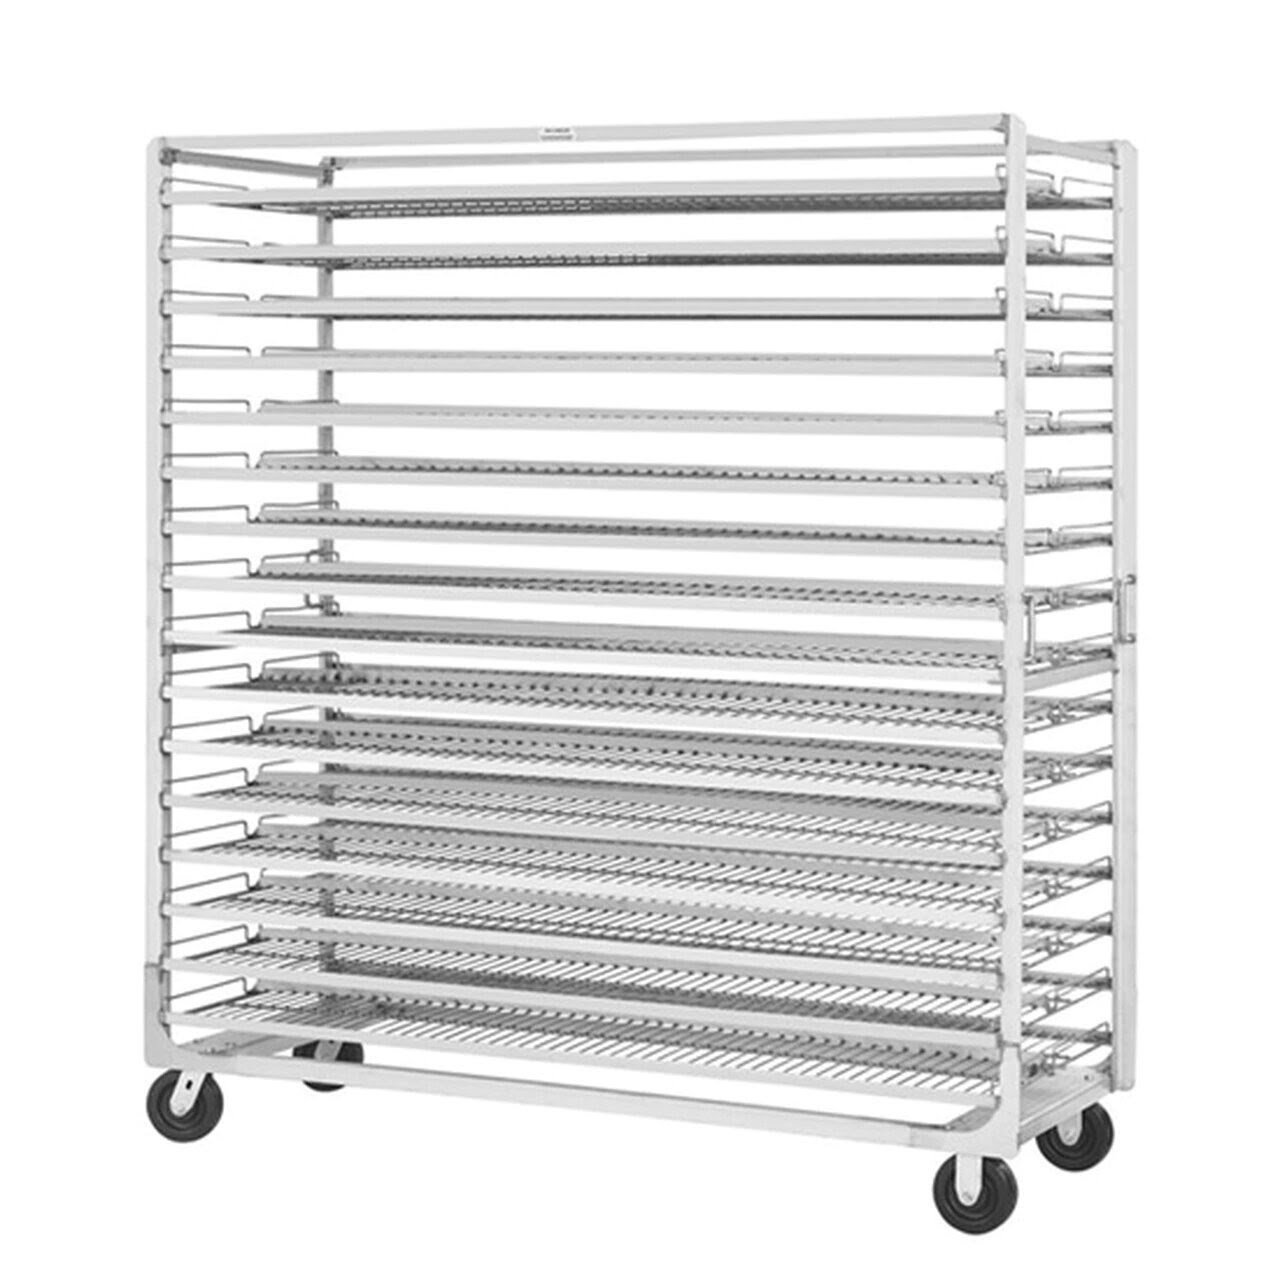 Bread rack stainless steel